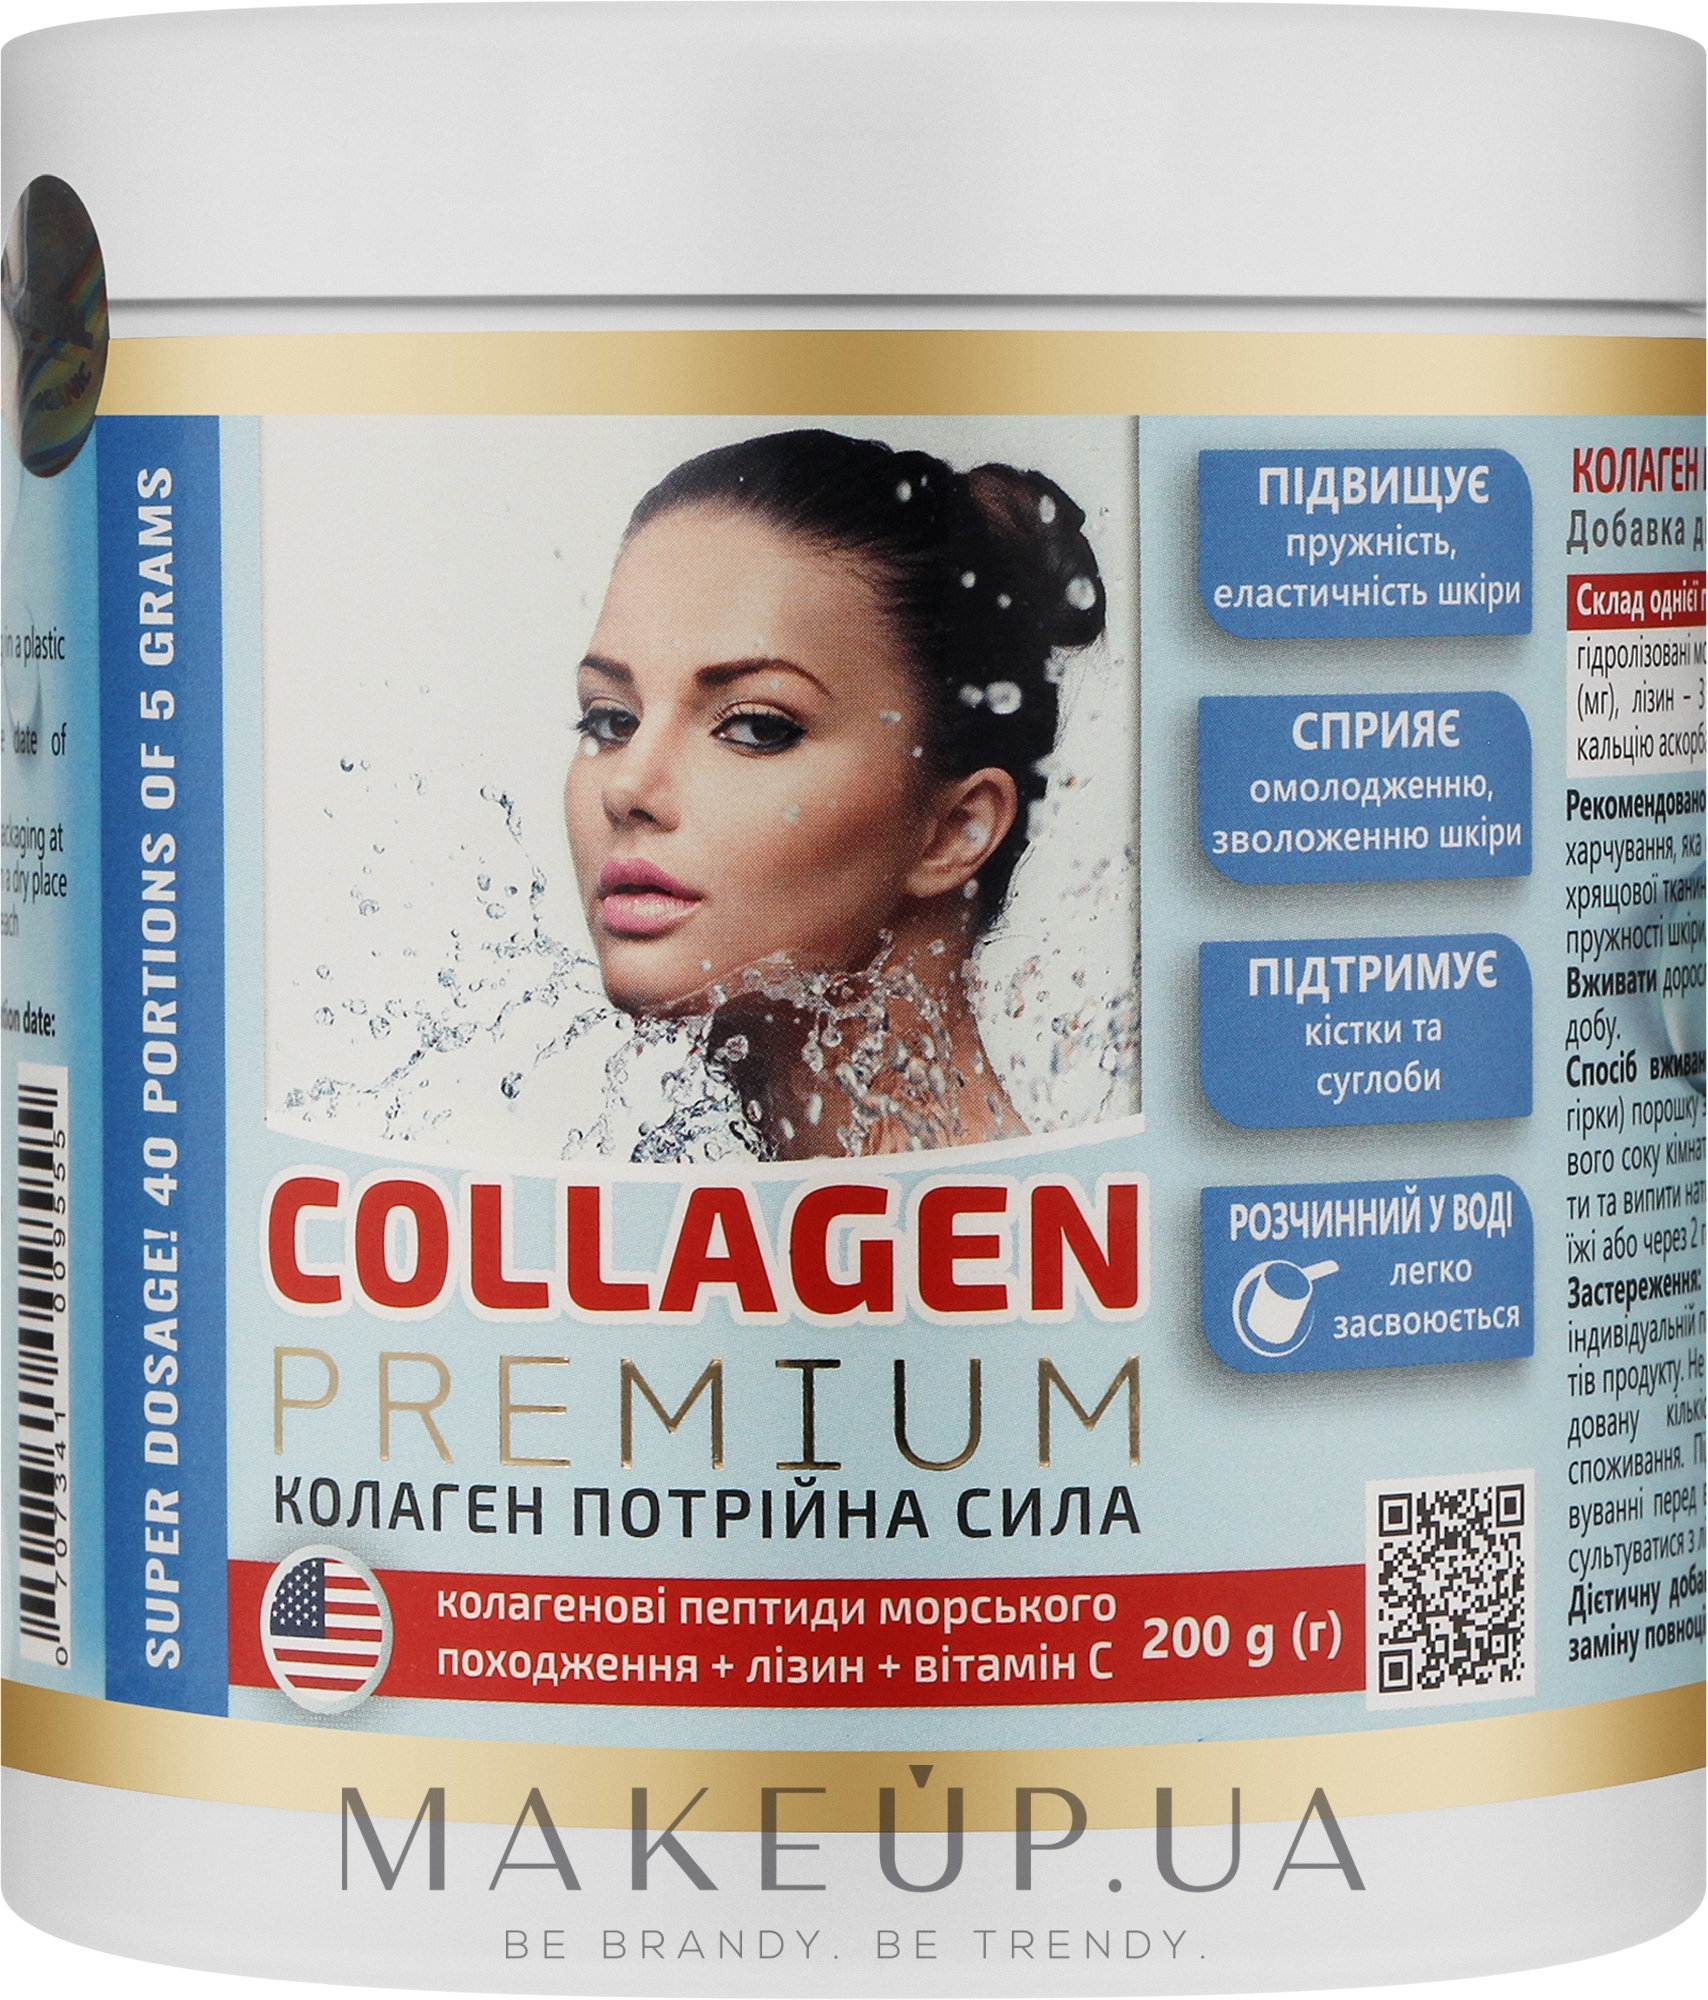 Харчова добавка "Колаген потрійна сила" - Greenwood Collagen Premium — фото 200g